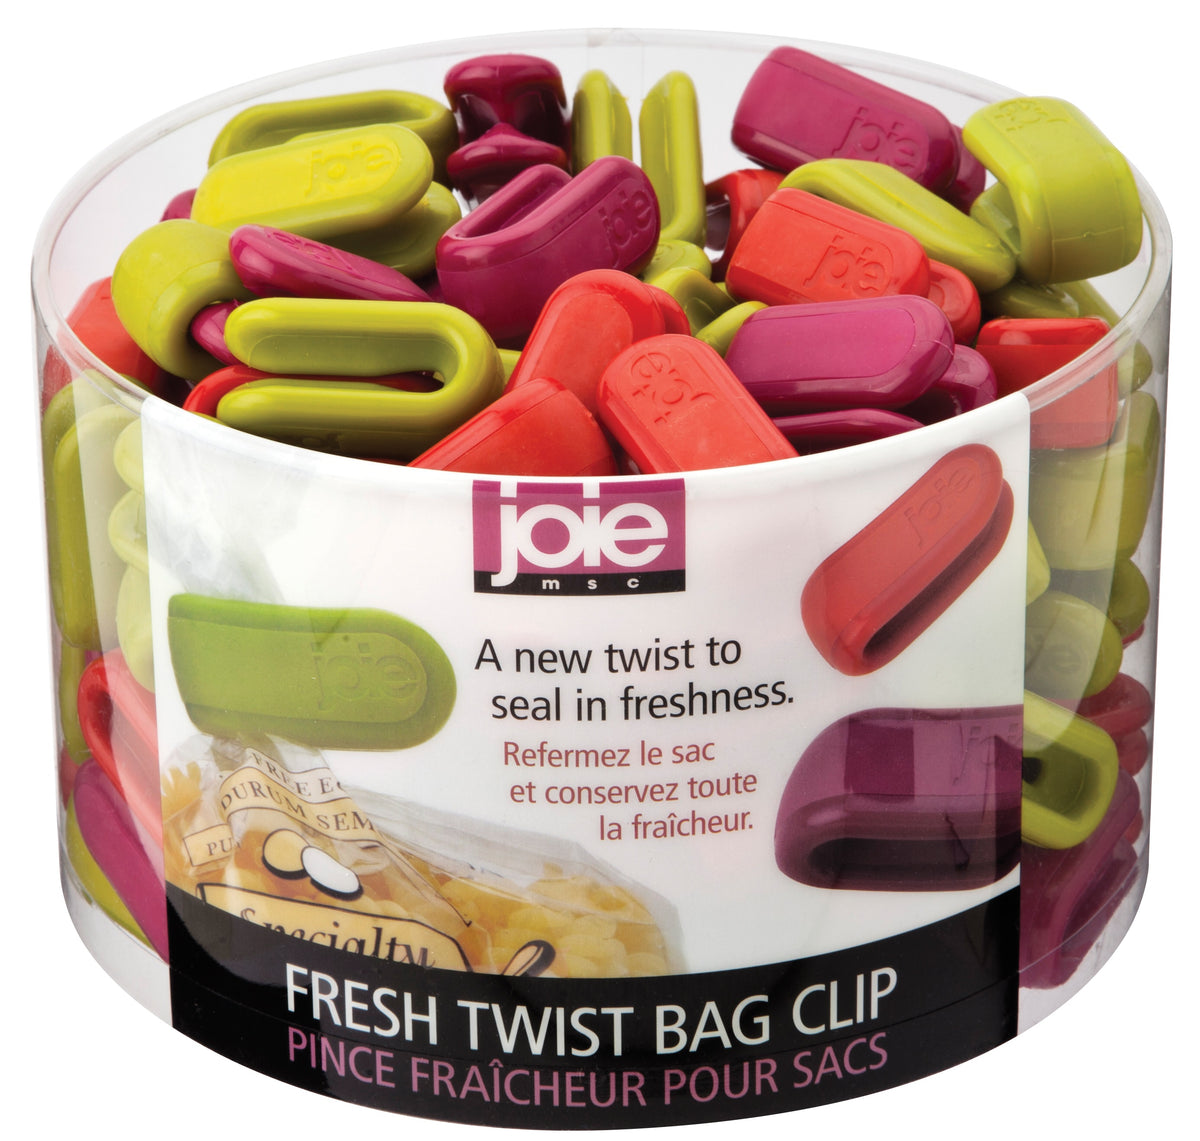 Joie MSC 26567PRO Twist Bag Clips, Assorted Colors